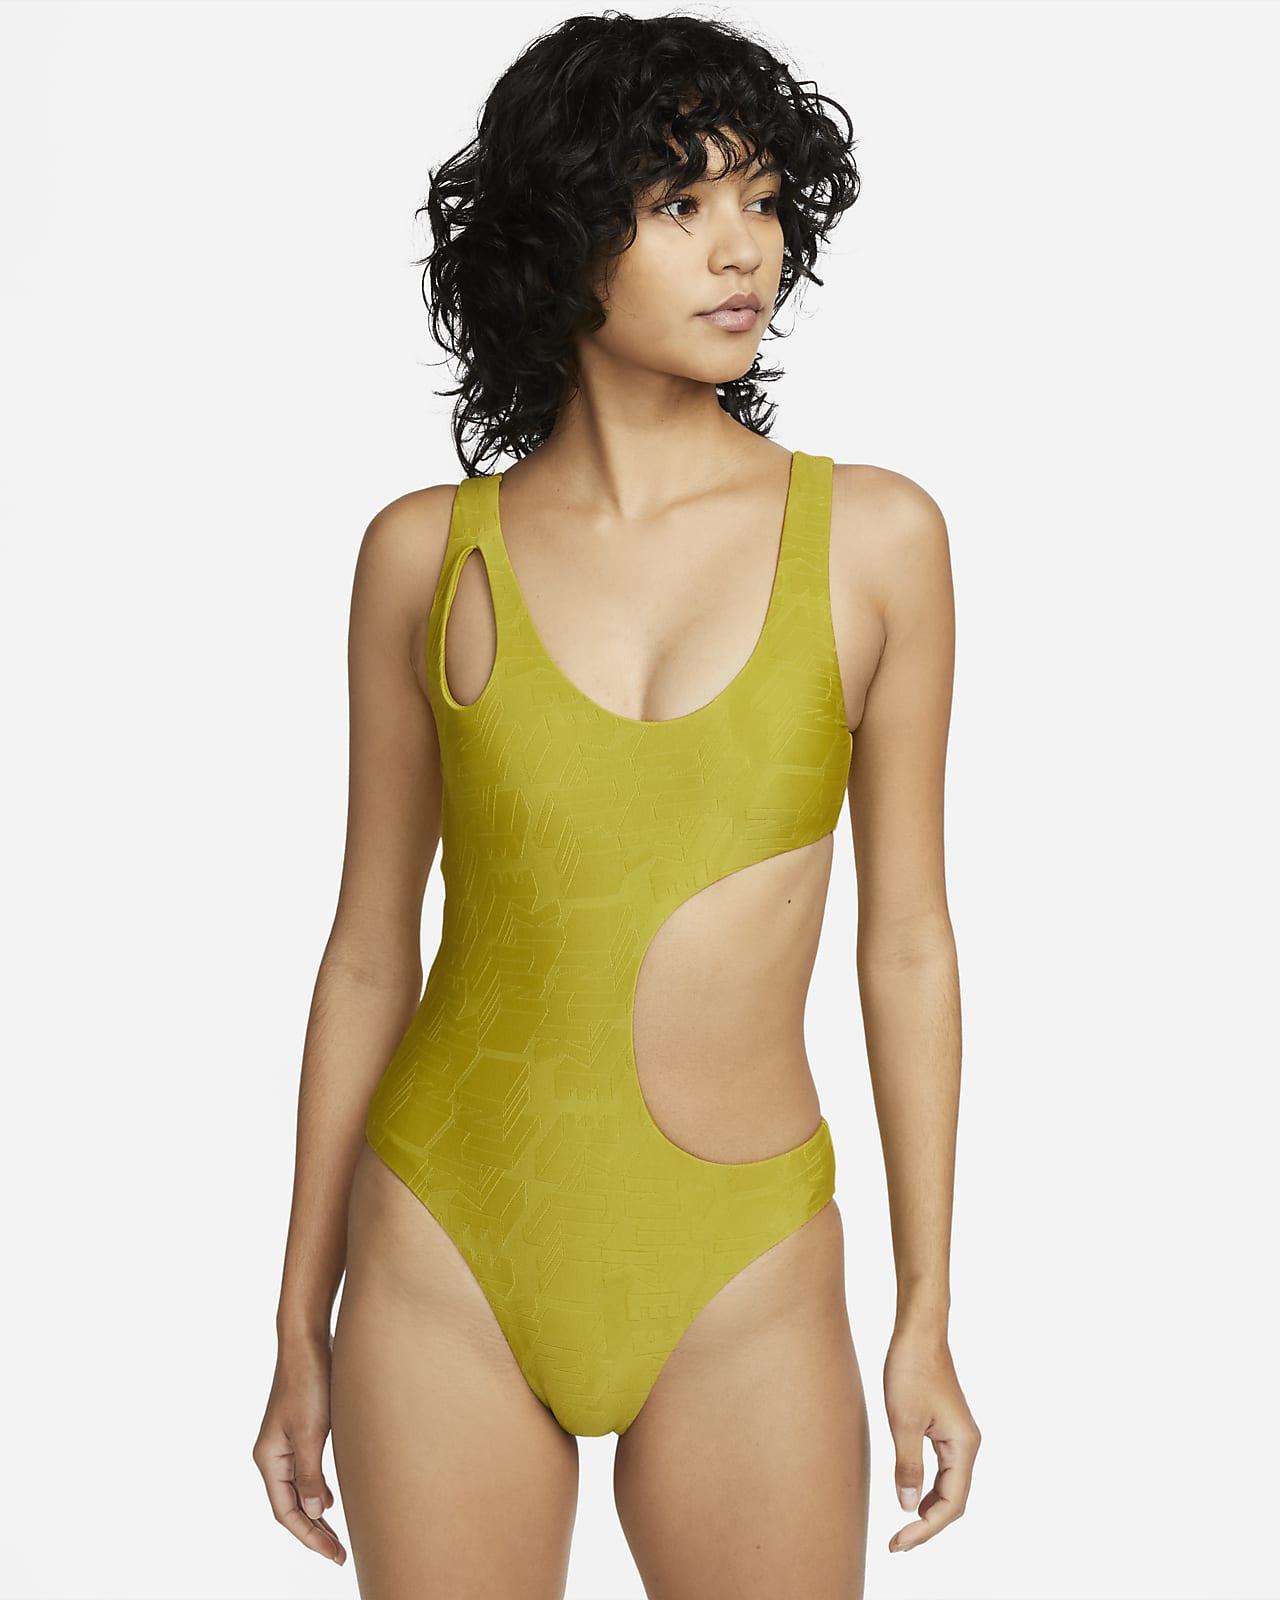 Nike Women's 1-Piece Swimsuit.